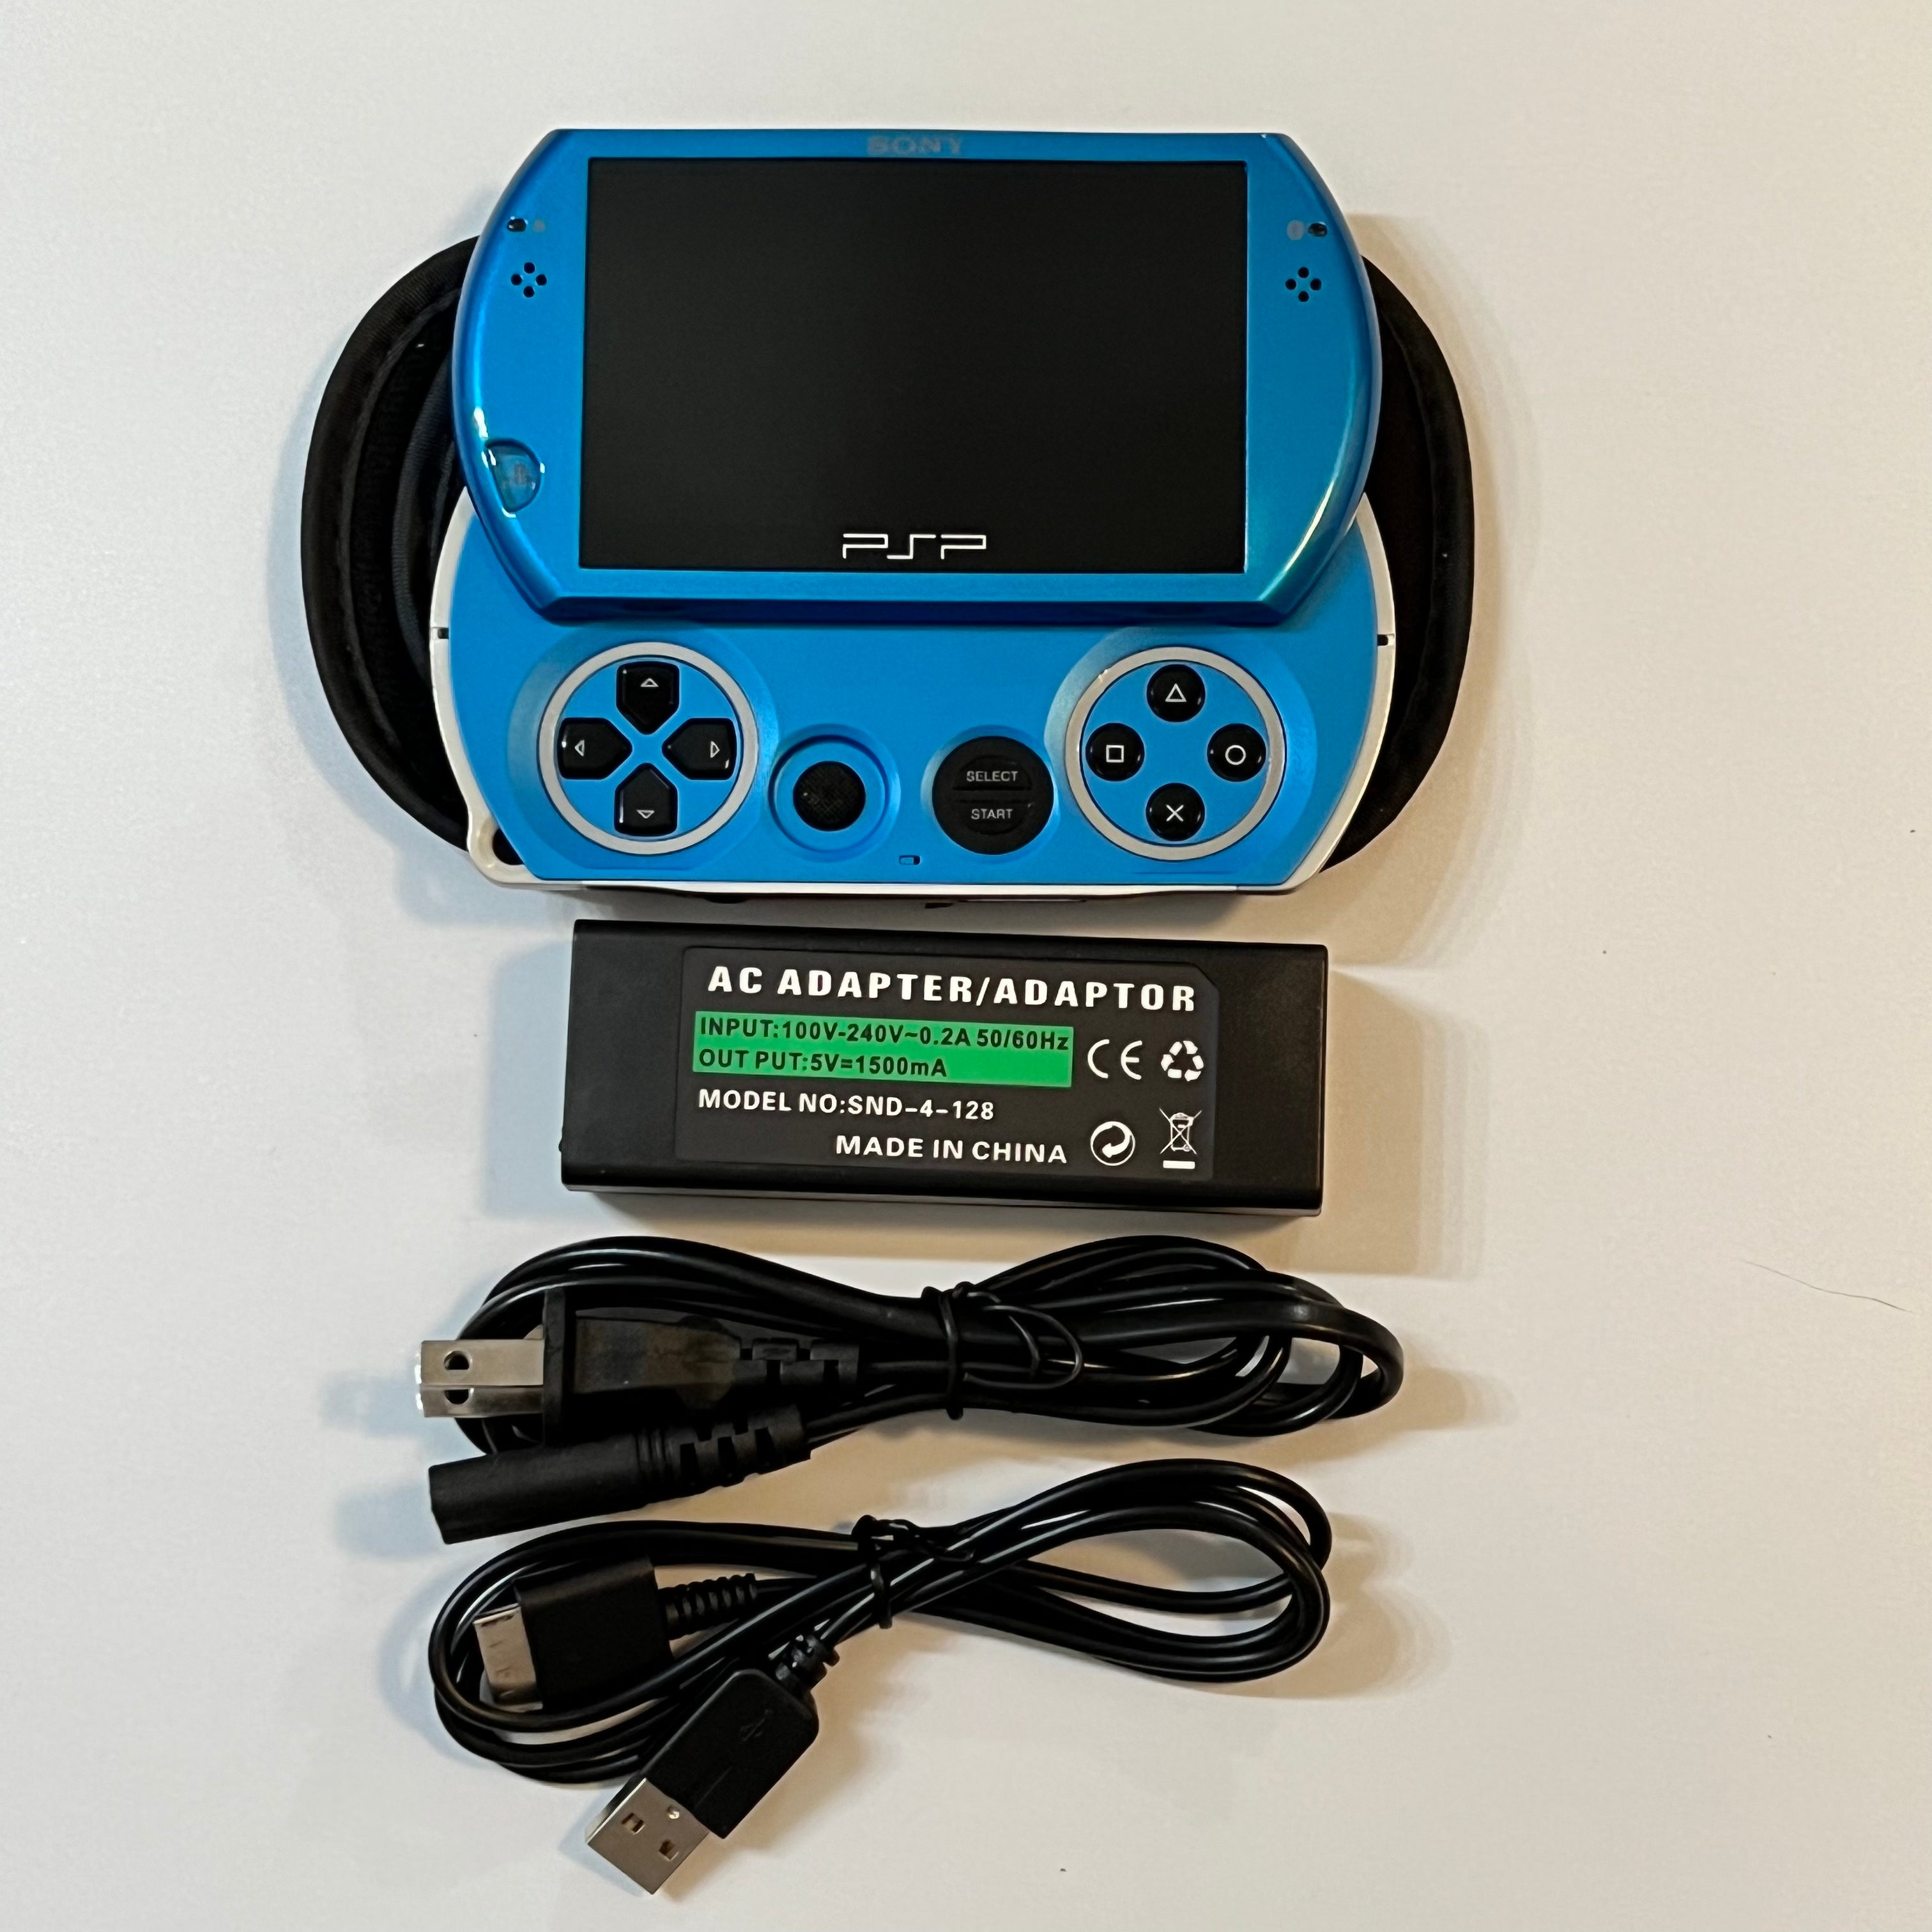 Black / Blue Sony PSP Go System – Everything PSP